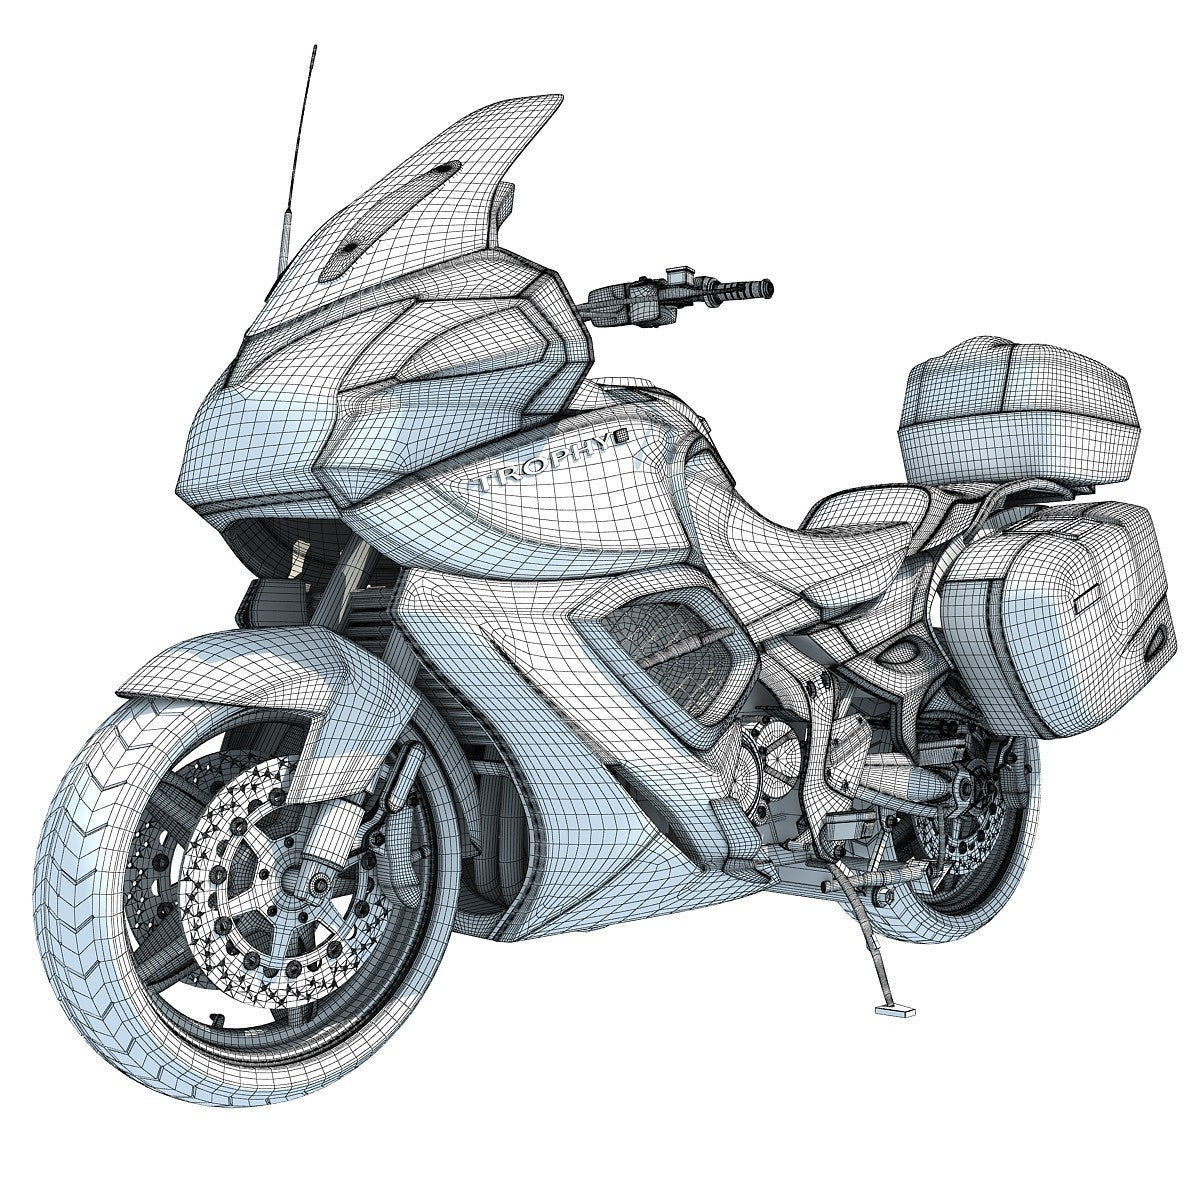 3D Motorcycles Models